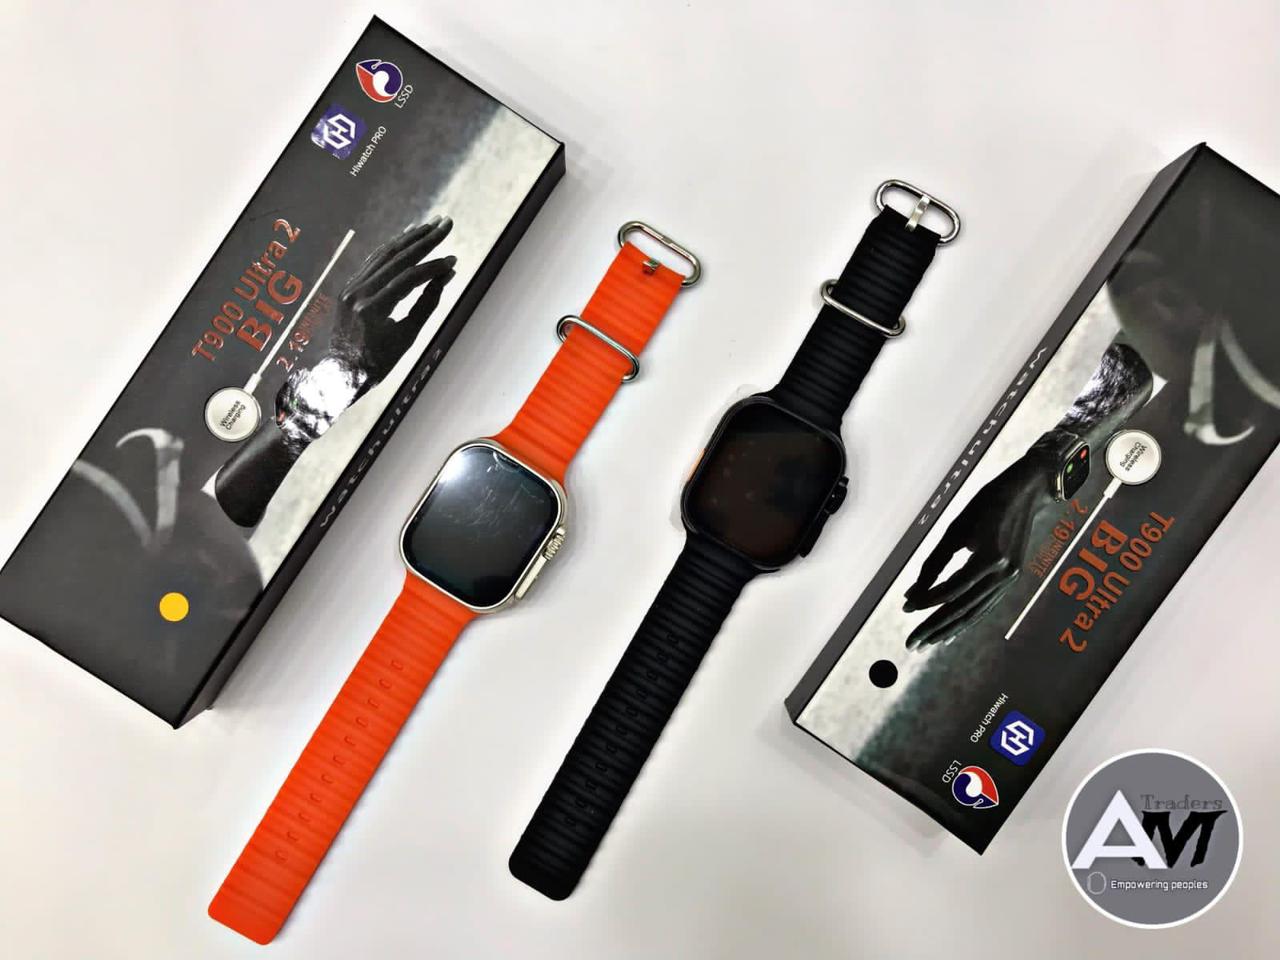 T800 Ultra 2 Smart Watch